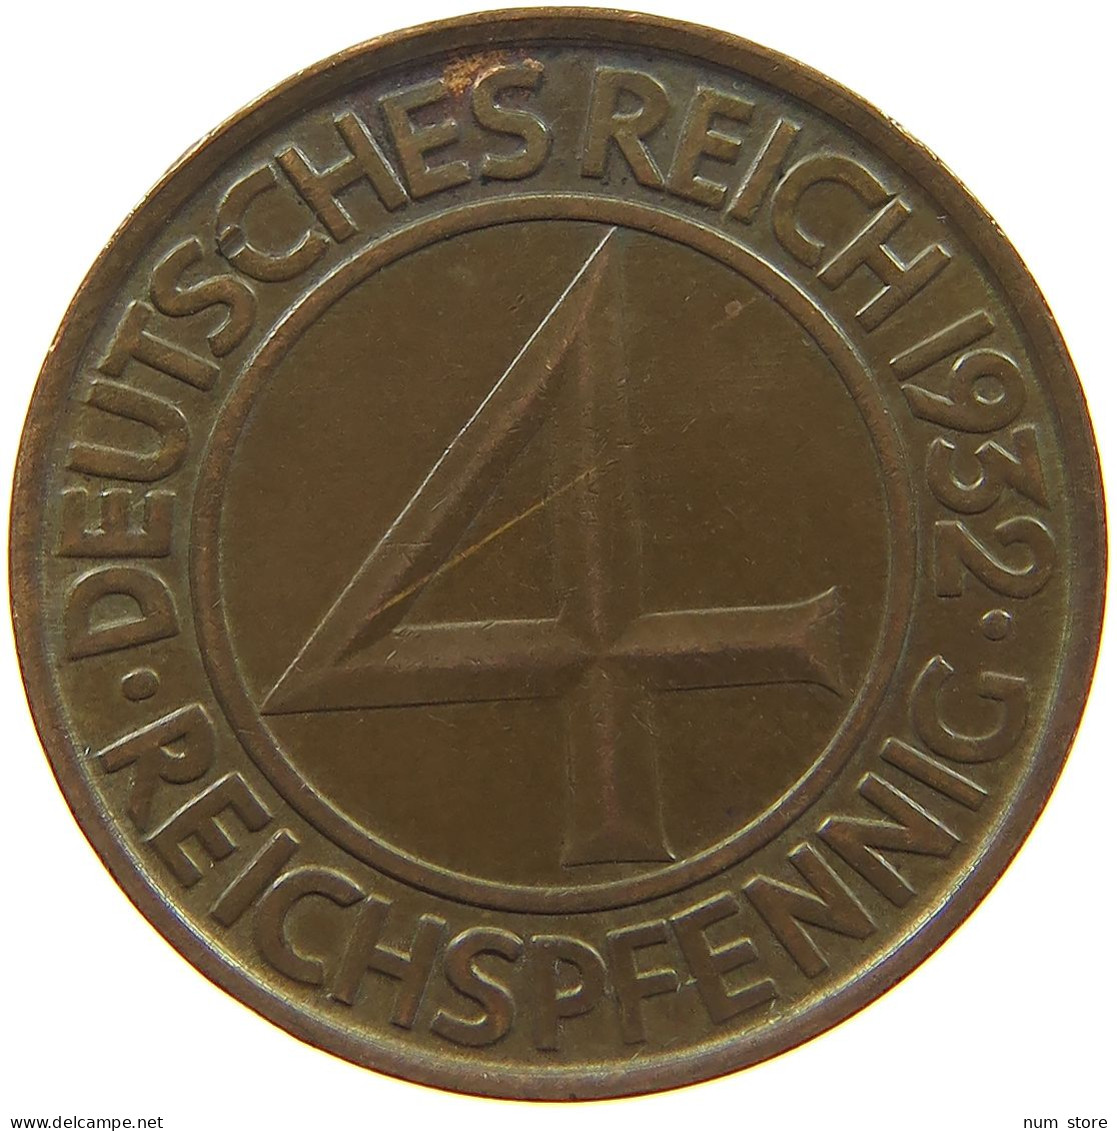 WEIMARER REPUBLIK 4 PFENNIG 1932 A  #c020 0347 - 4 Reichspfennig